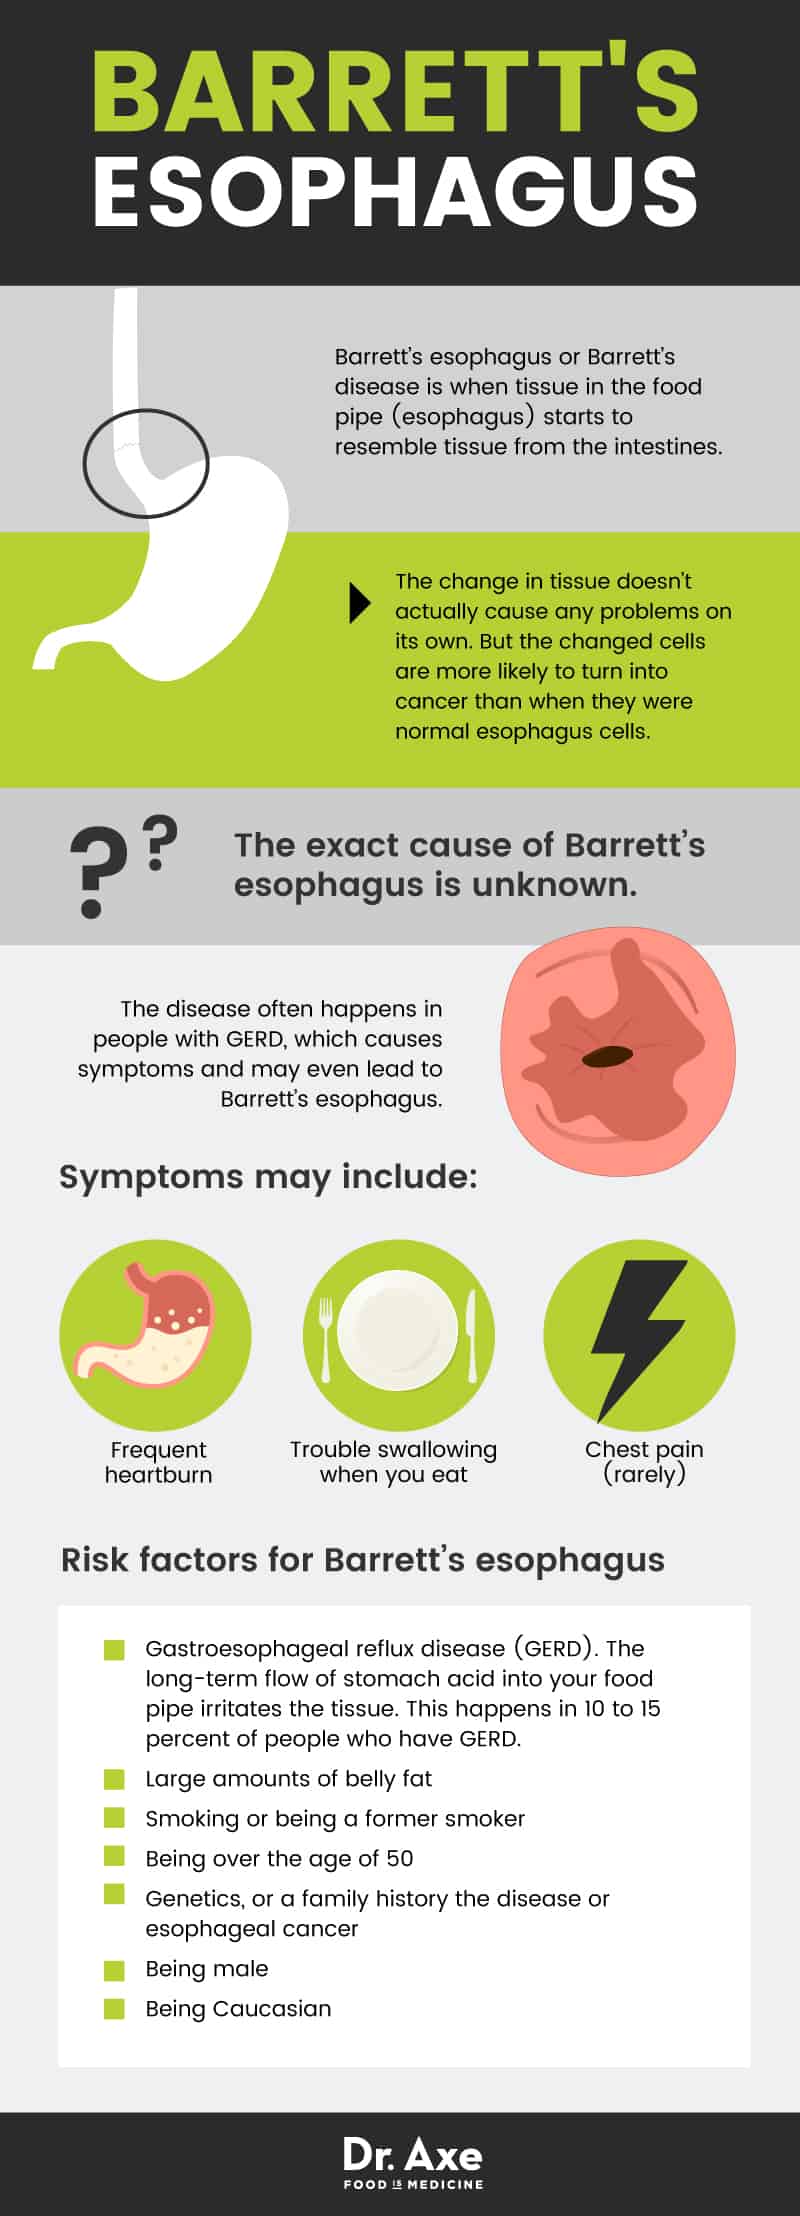 Barrett's esophagus - Dr. Axe